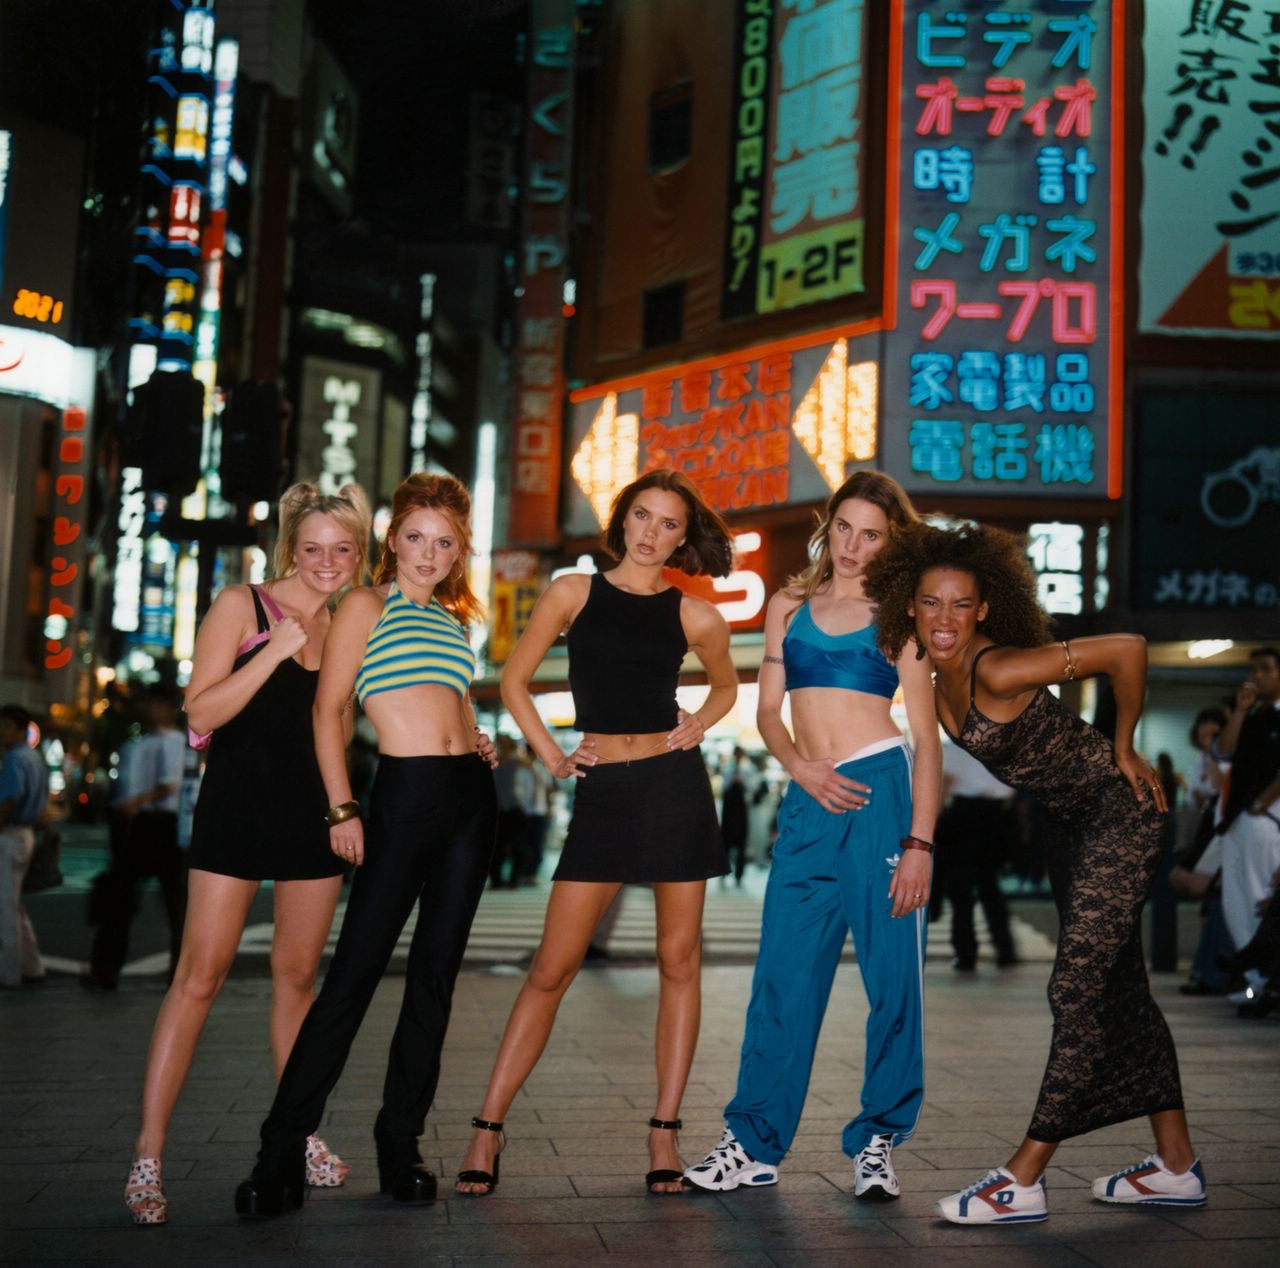 http://4.bp.blogspot.com/_FEkxtl1-FKs/THKIh9gYXZI/AAAAAAAAACg/XaX6Ipsle8Y/s1600/Spice+Girls+in+Toyko,+1996.jpg